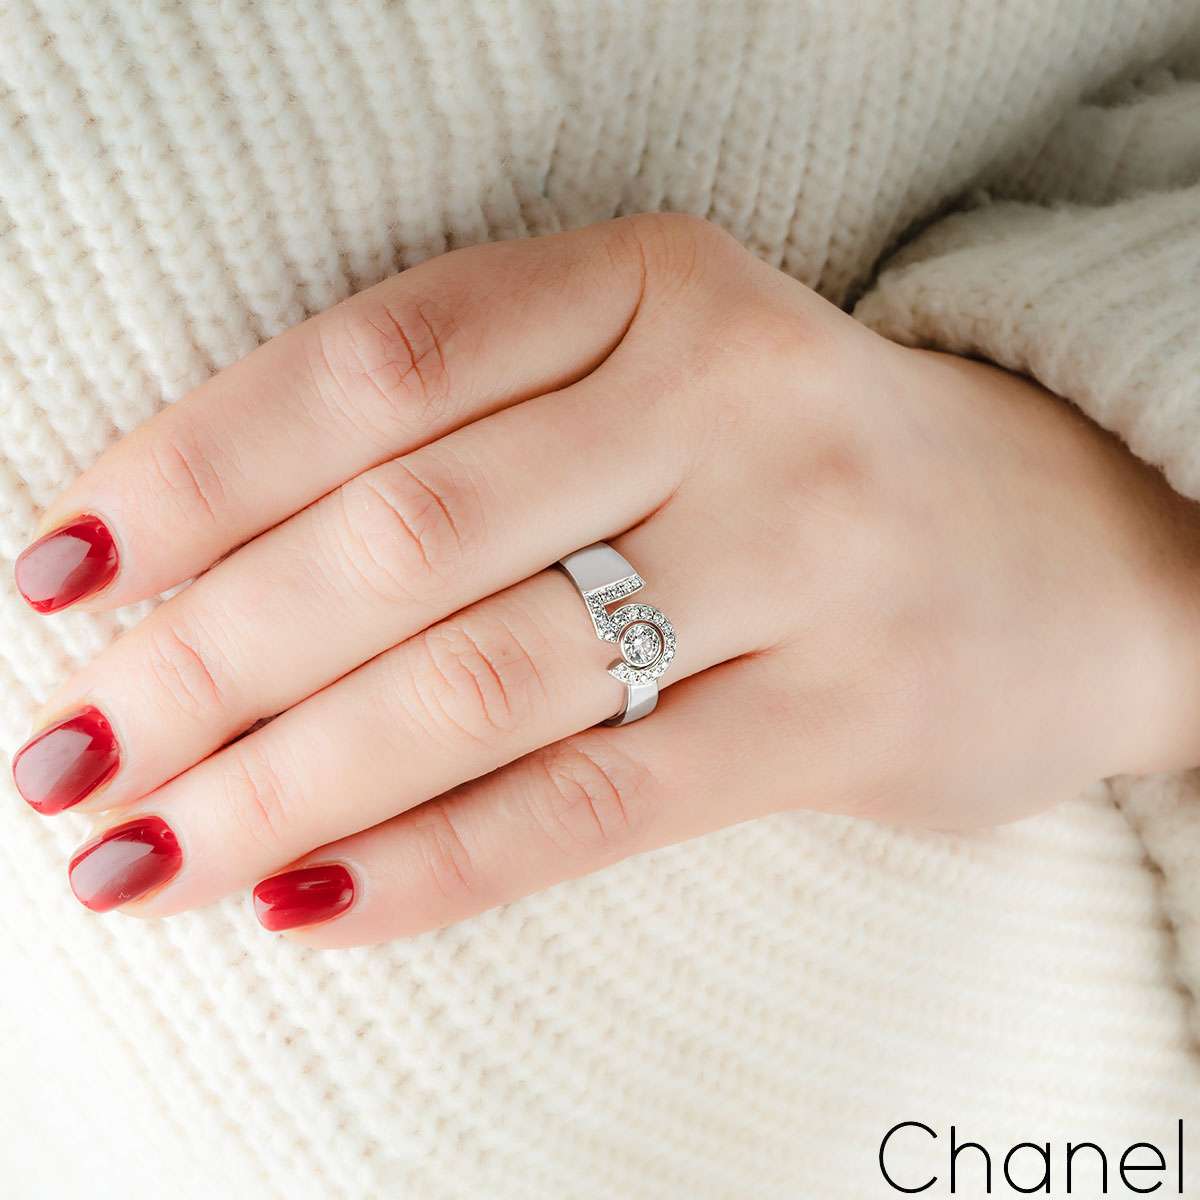 Chanel White Gold Diamond Eternal No.5 Ring Size 55 J12002